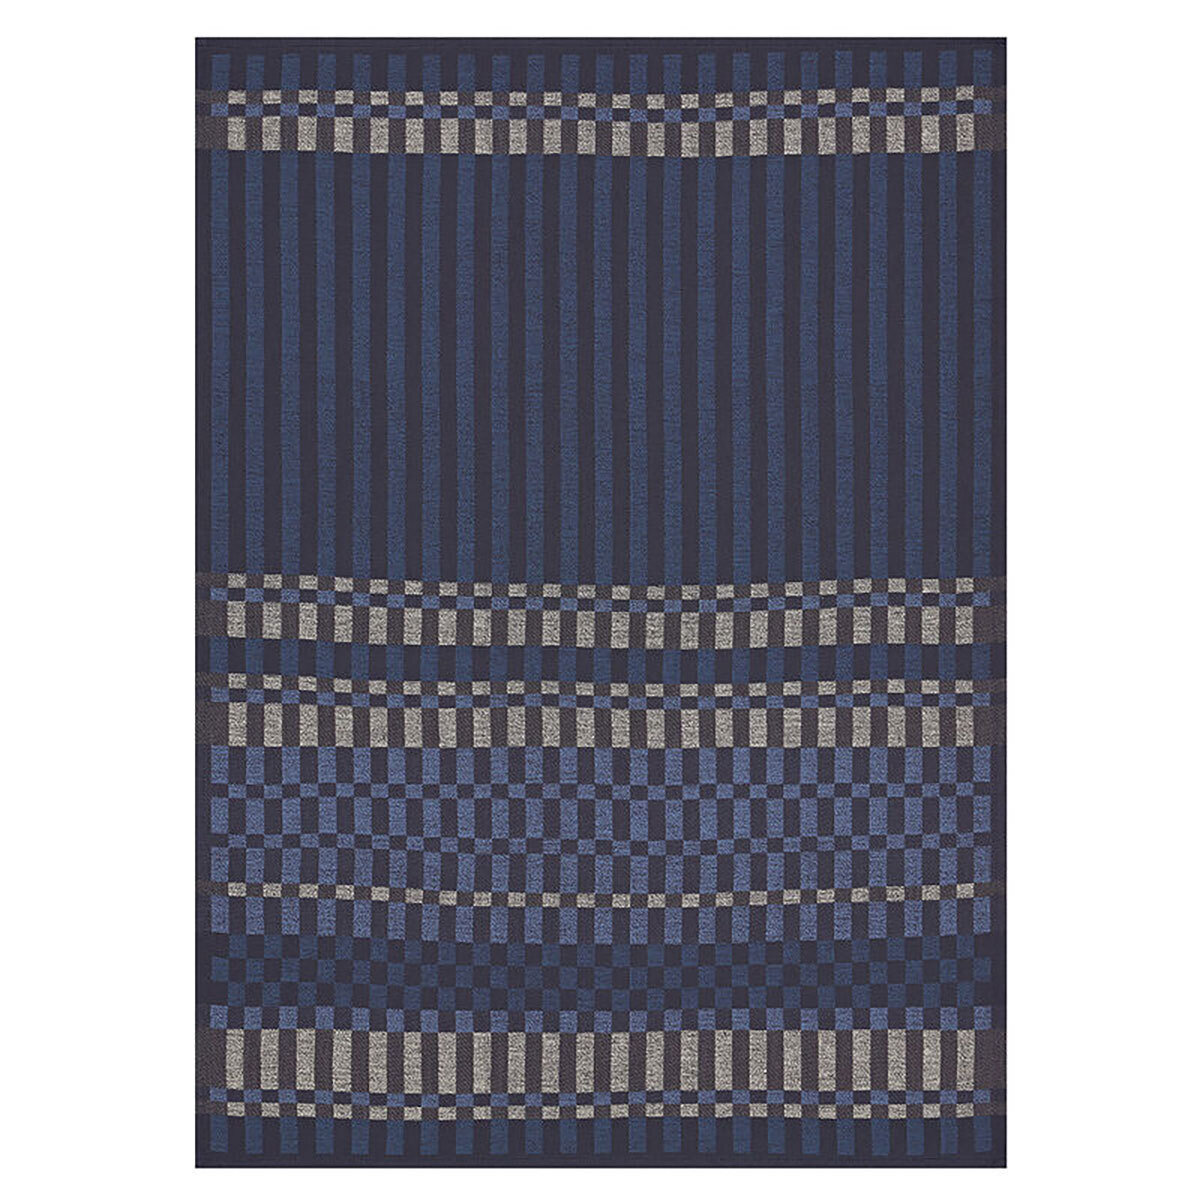 Le Jacquard Francais Tea Towel Origin Rythme Blue 100% Cotton 24 x 31 Inch 28232 Set of 4